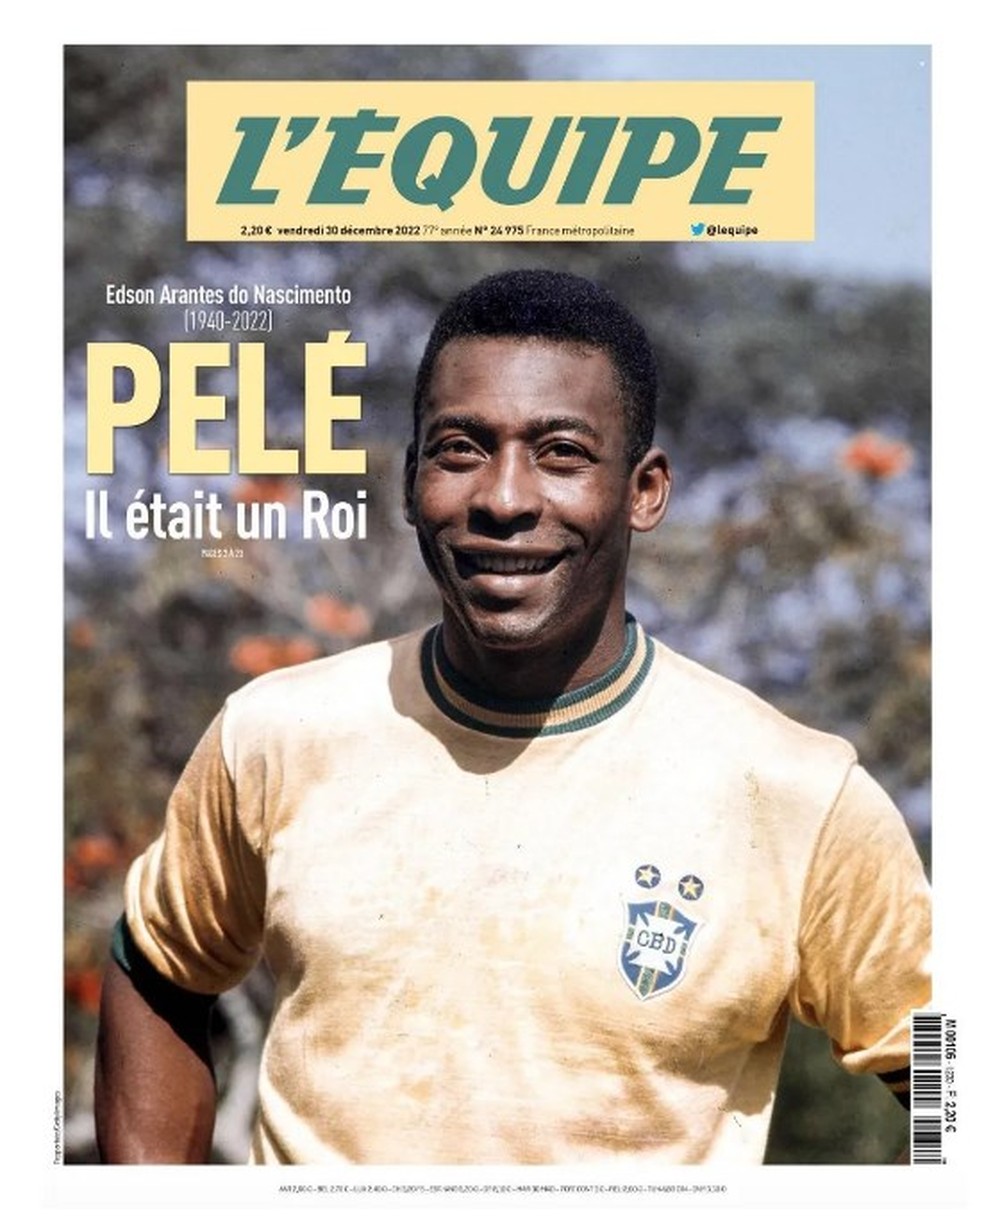 'Pelé foi um rei', estampou na capa o francês L'Équipe — Foto: Reprodução